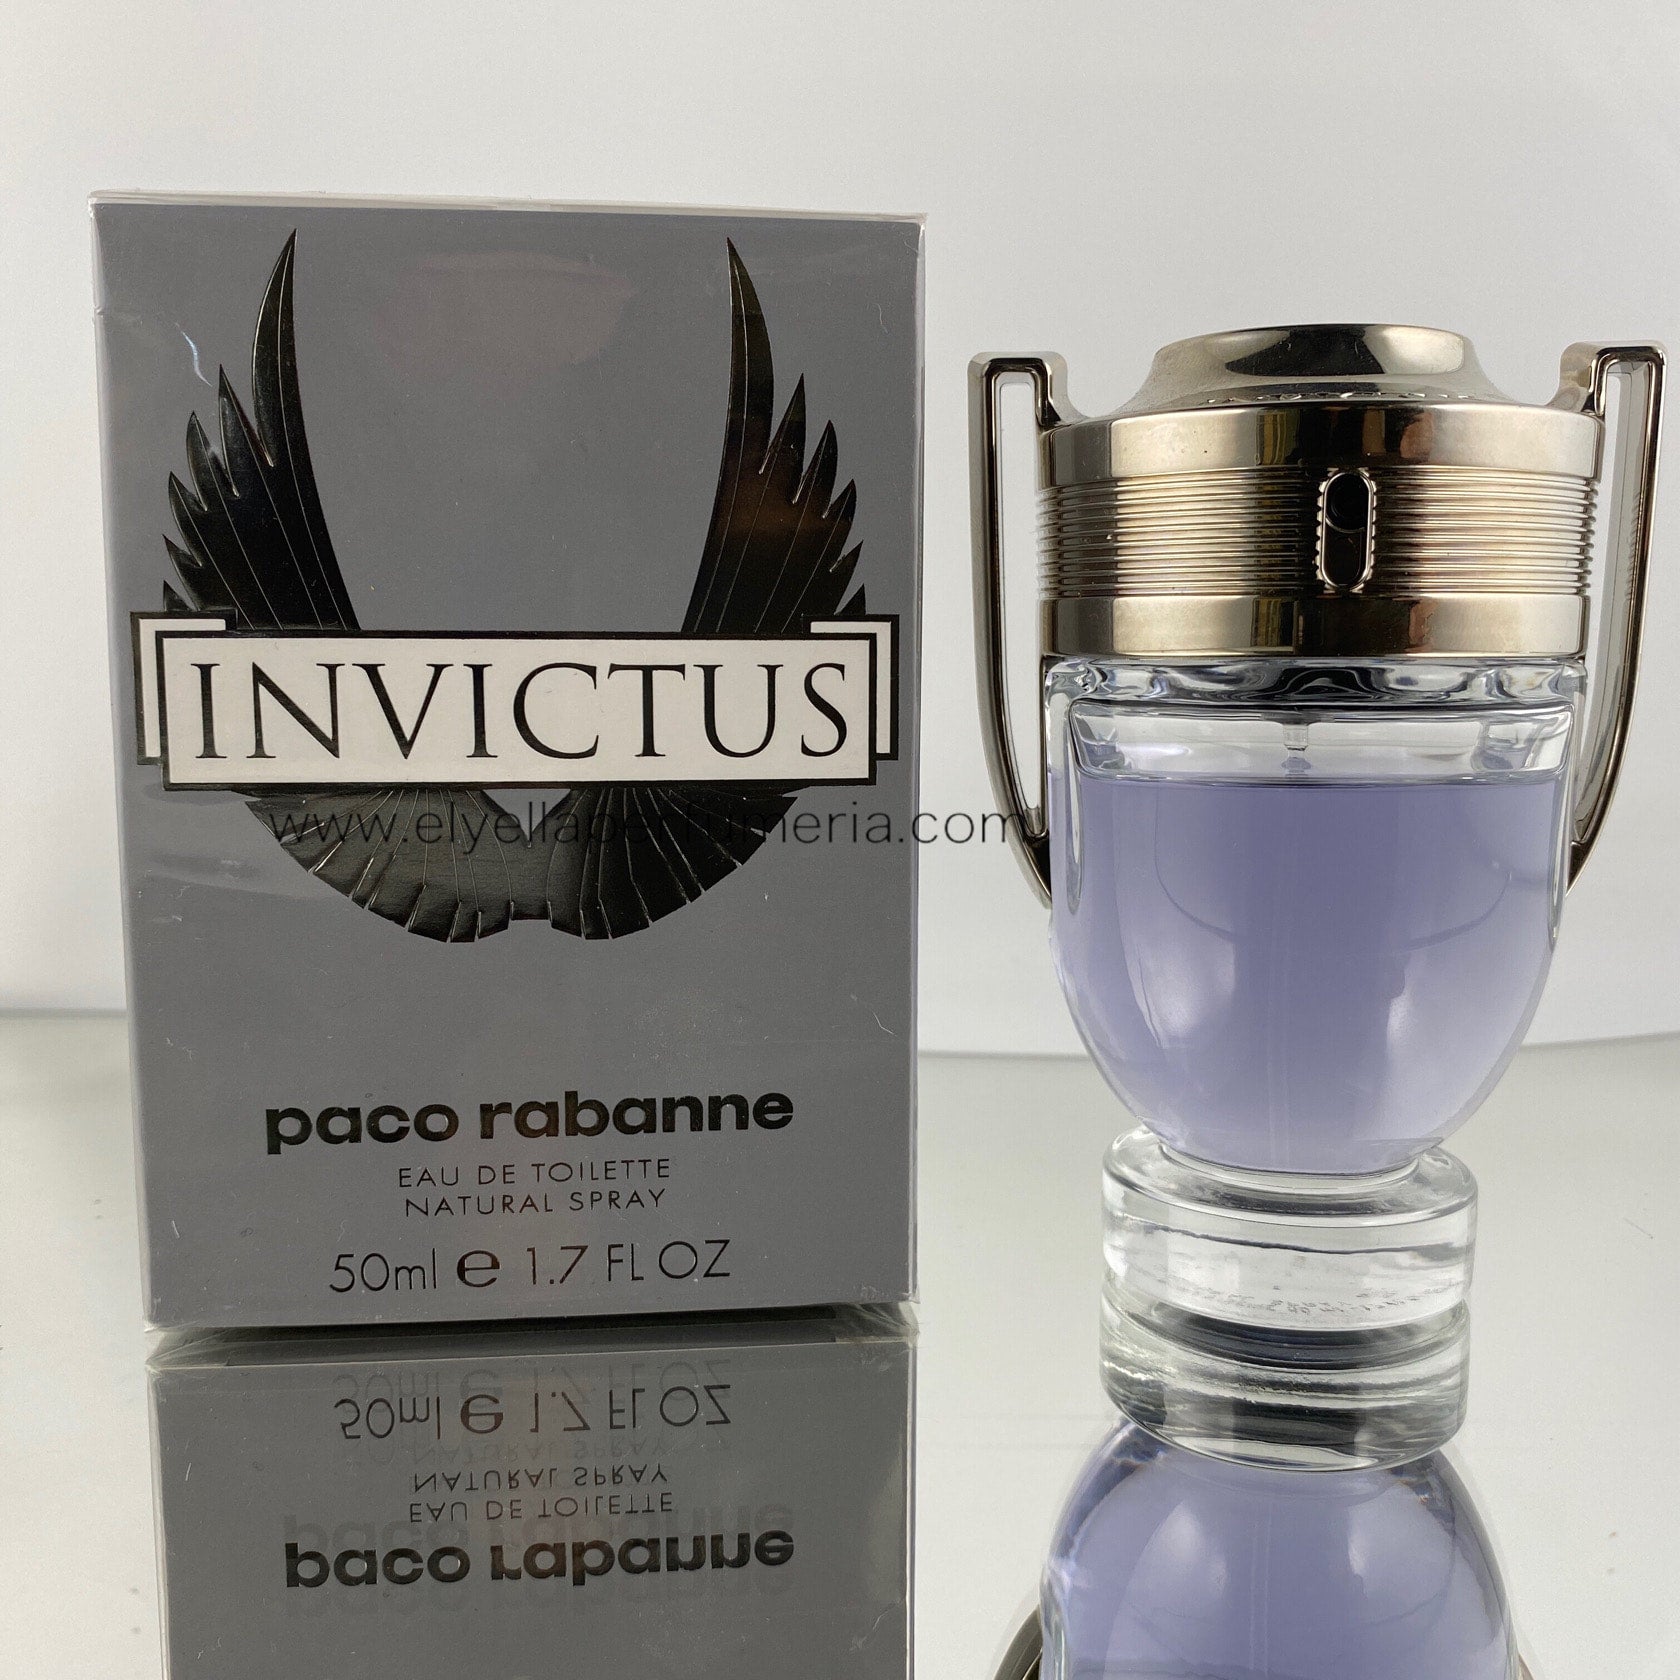 Invictus Paco Rabanne Men | EL Y ELLA PERFUMERIA Perfume Store